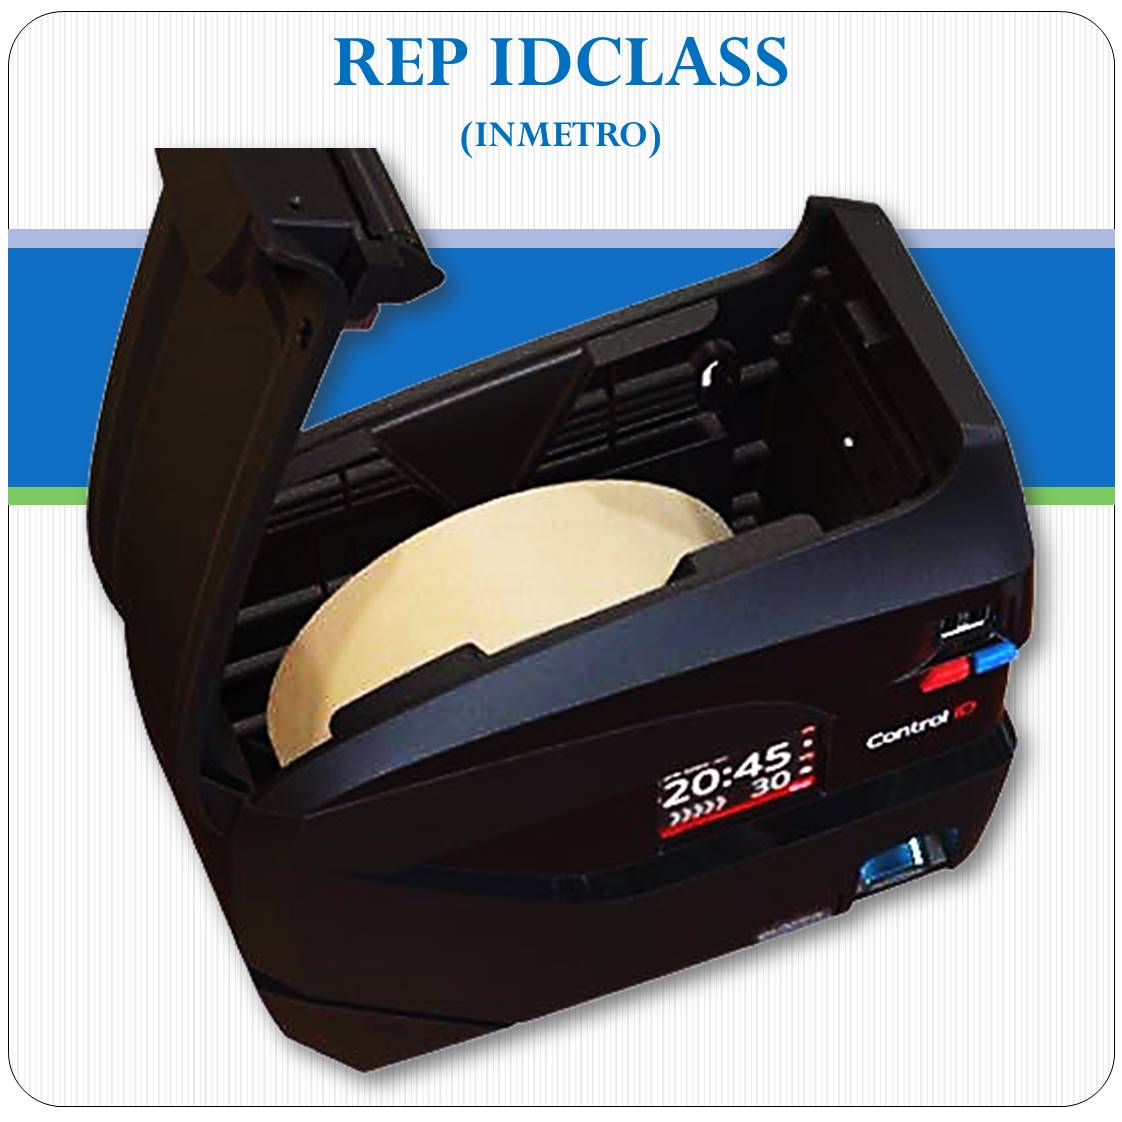 REP iDClass BIO - Biometria e Senha - Inmetro